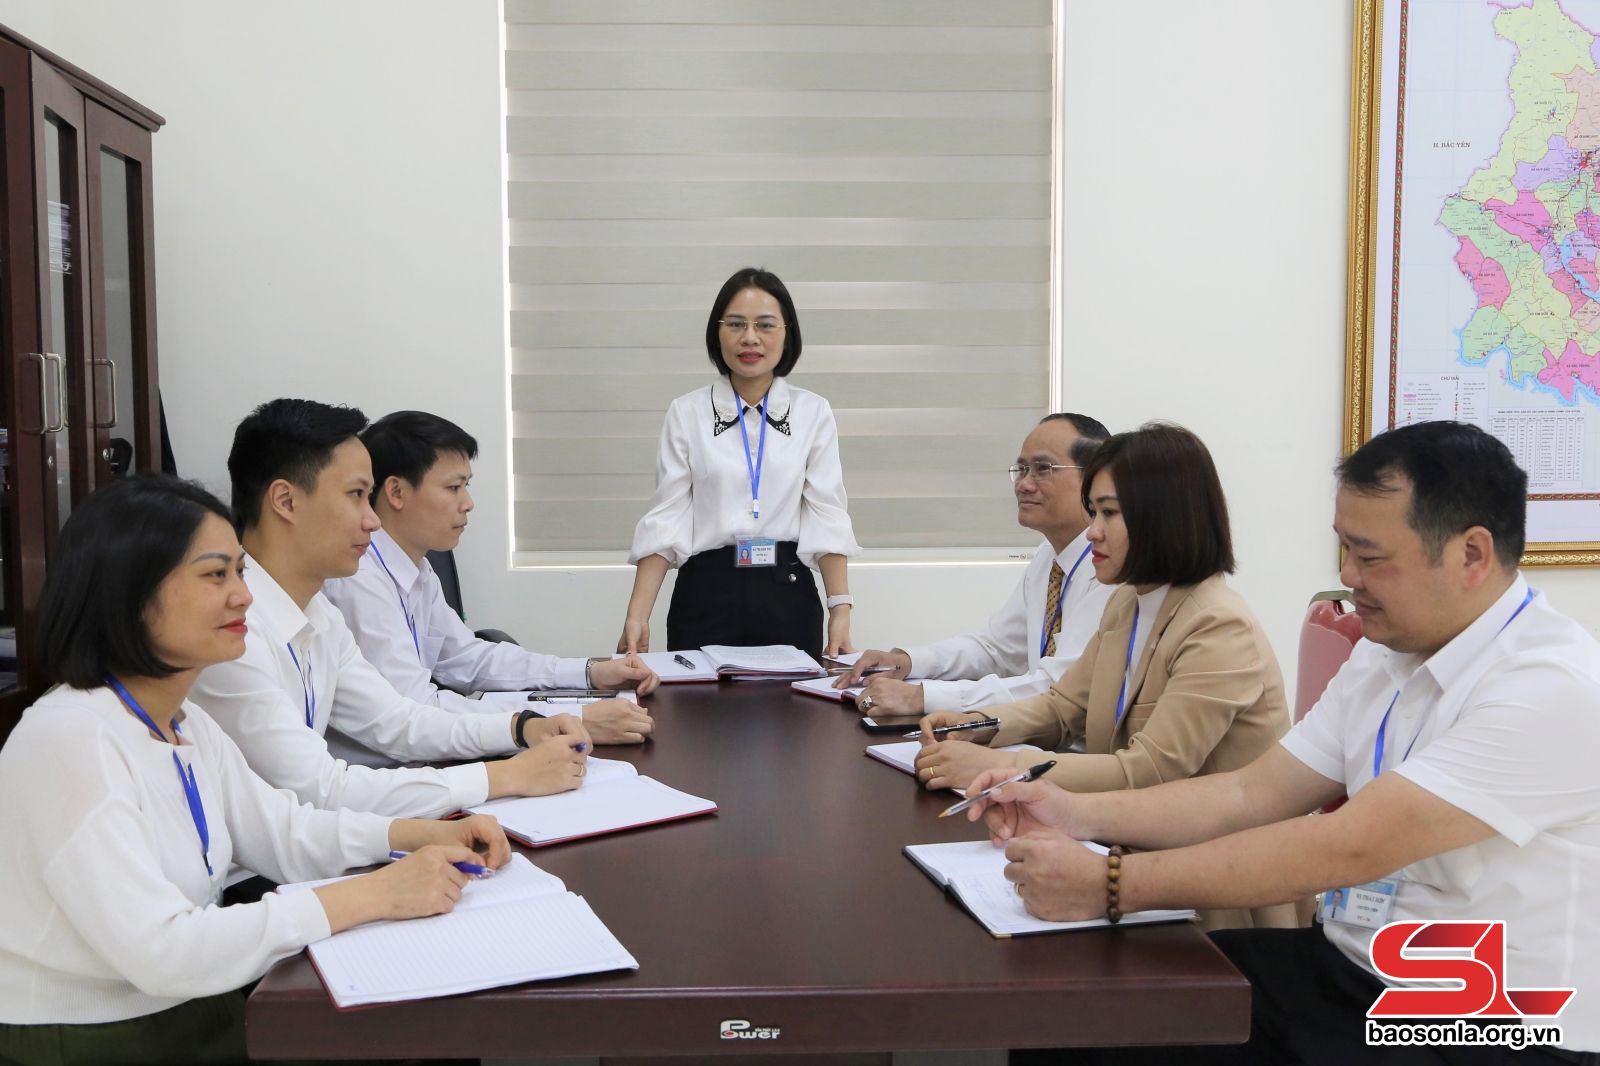 Đảng bộ huyện Phù Yên nâng cao chất lượng đội ngũ cán bộ